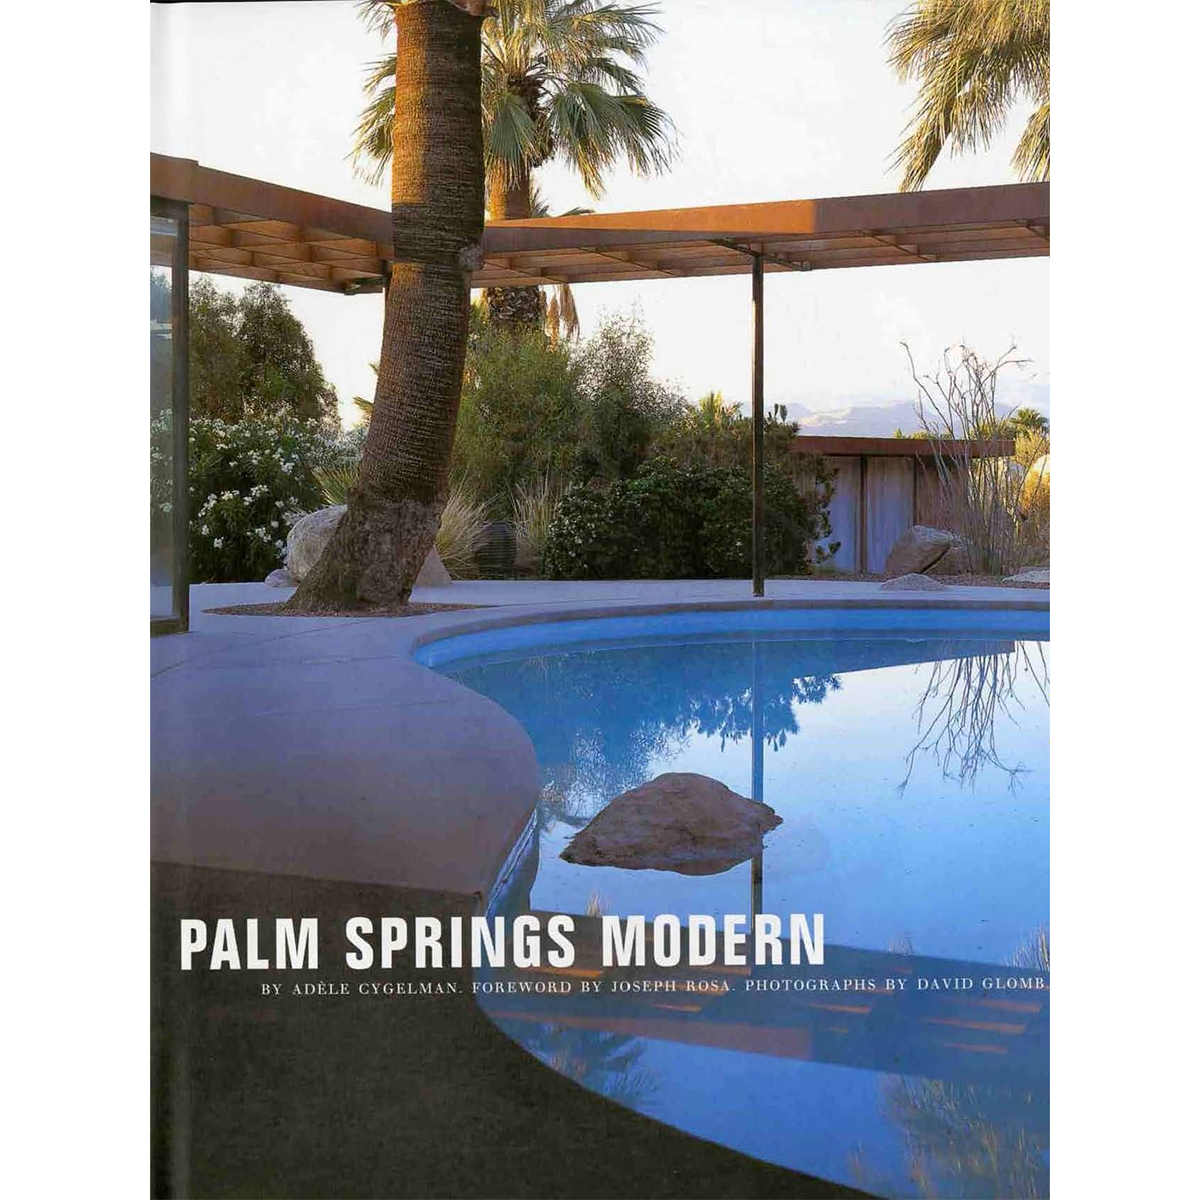 Palm Springs Modern: Houses in the California Desert